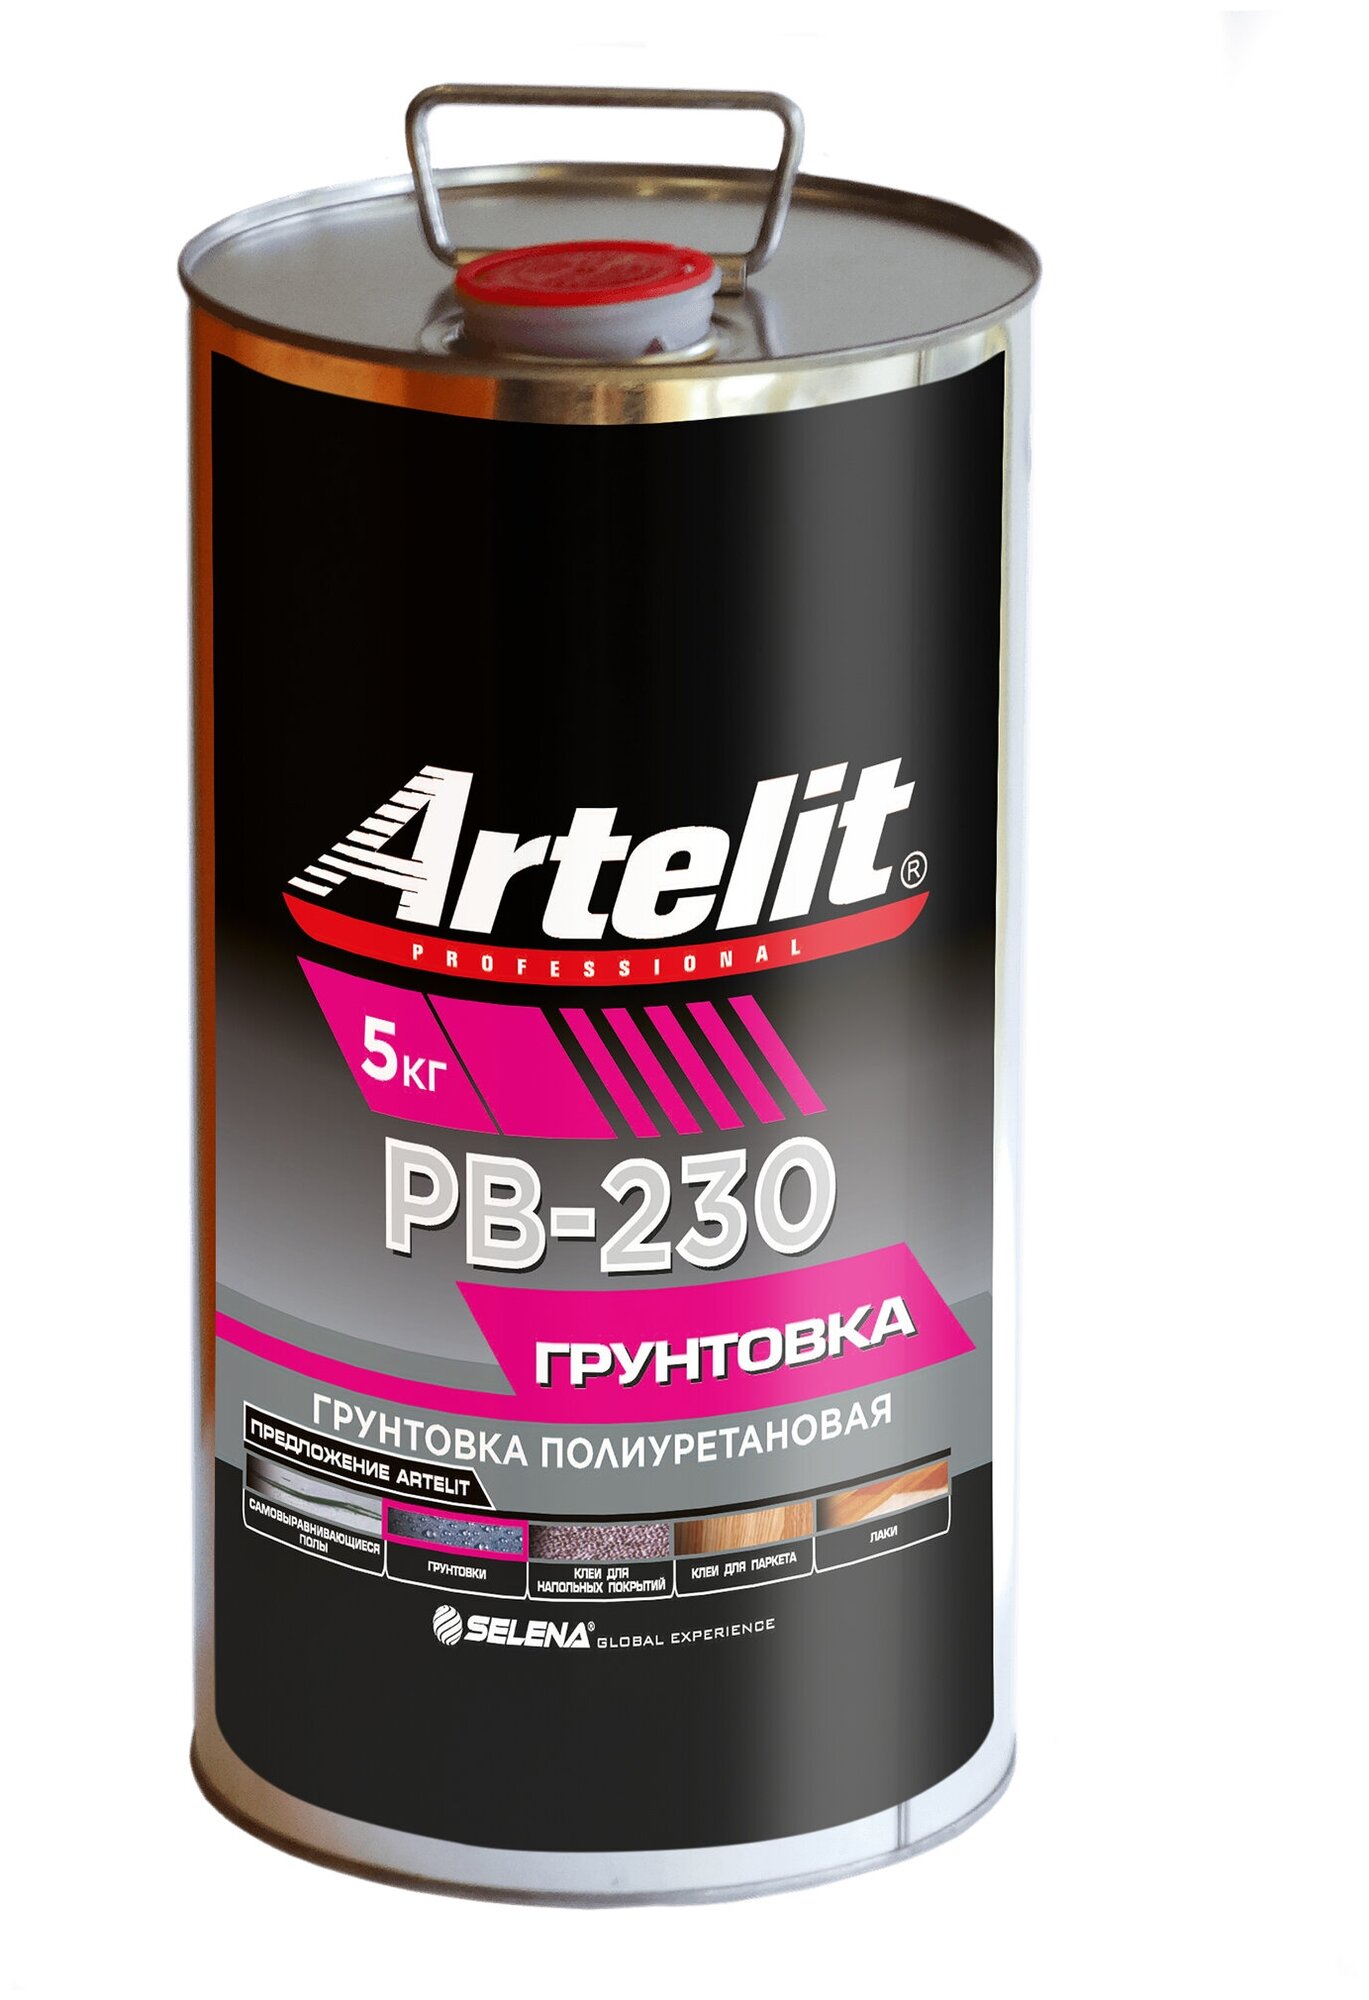 Однокомпонентная полиуретановая грунтовка глубокого проникновения Artelit Professional PB-230, 5кг